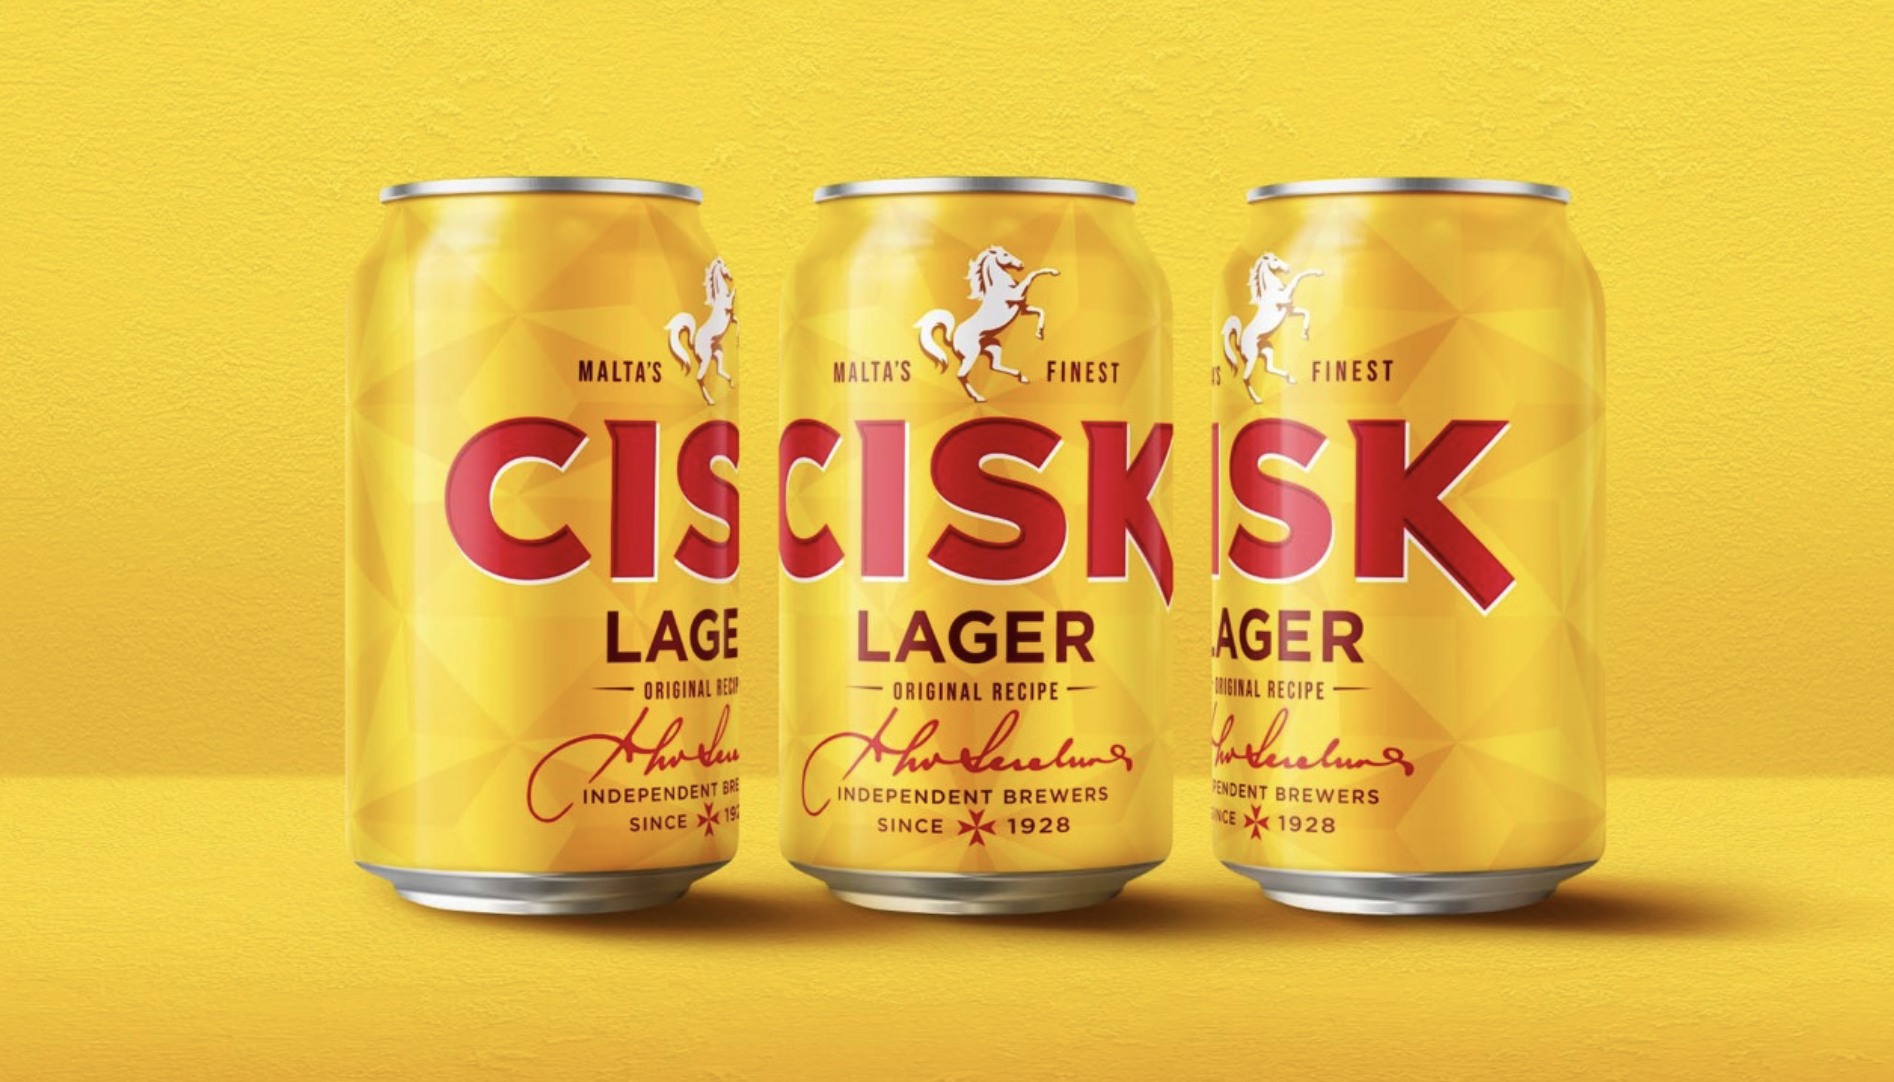 Cisk啤酒品牌&包裝設計創意欣賞